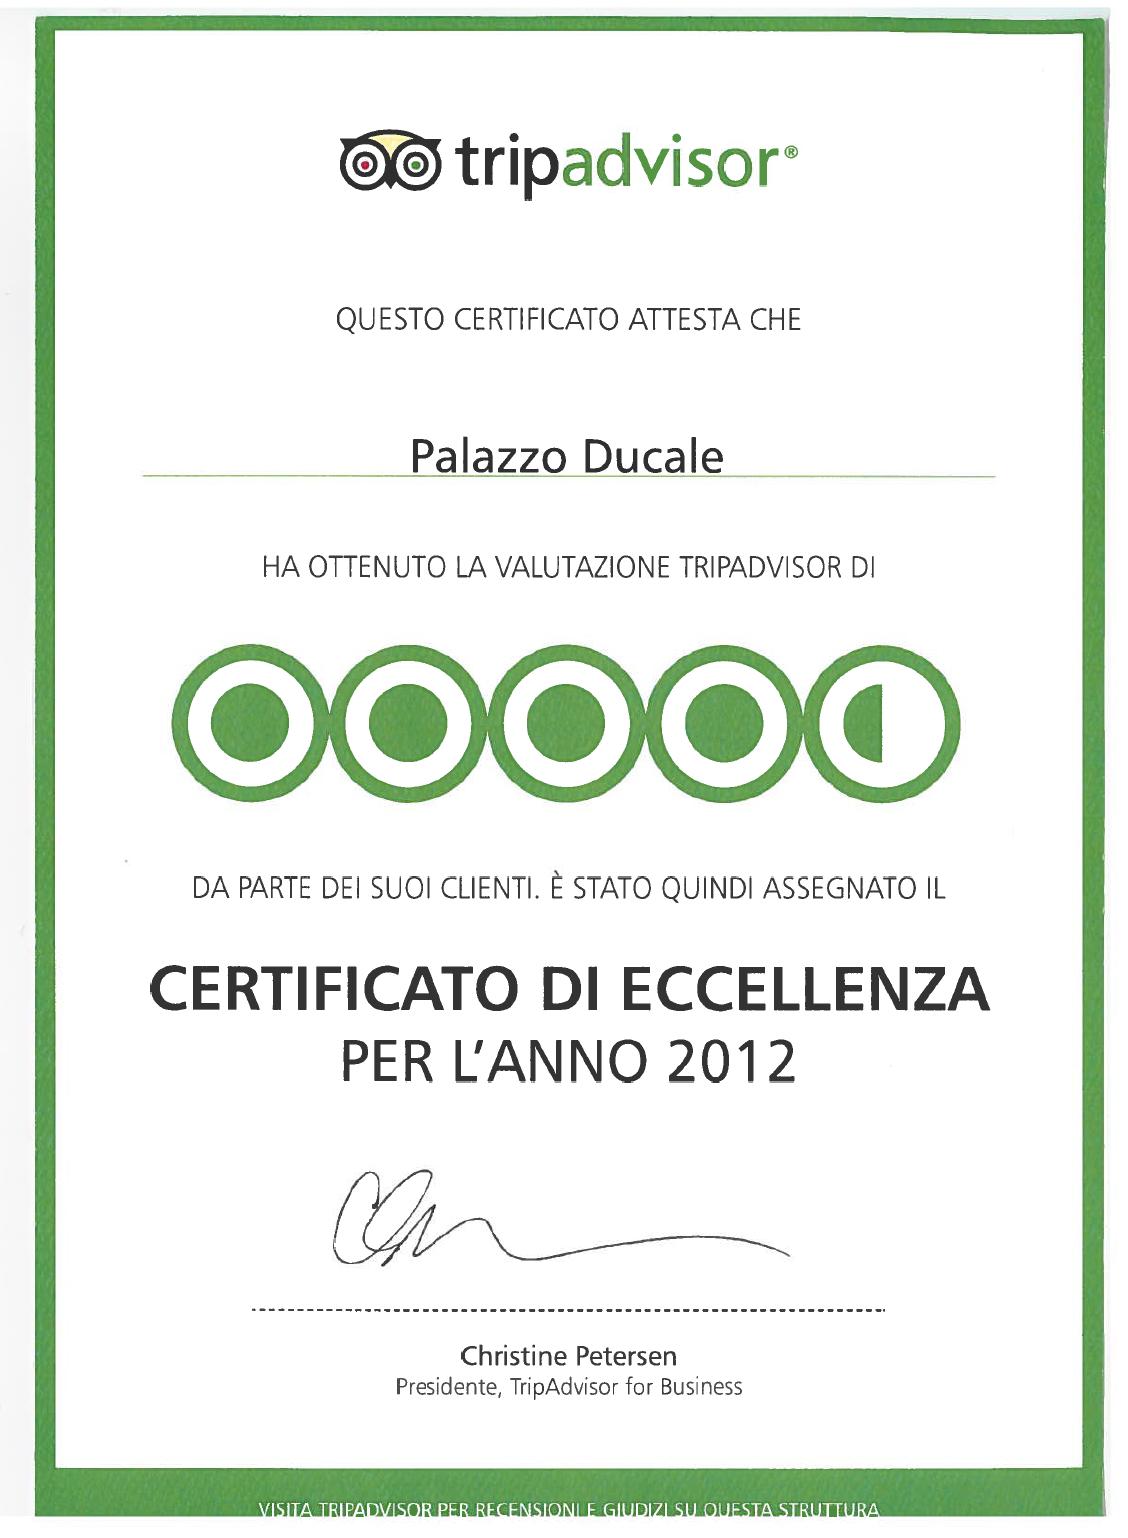 Certificato di Eccellenza Tripadvisor 2012